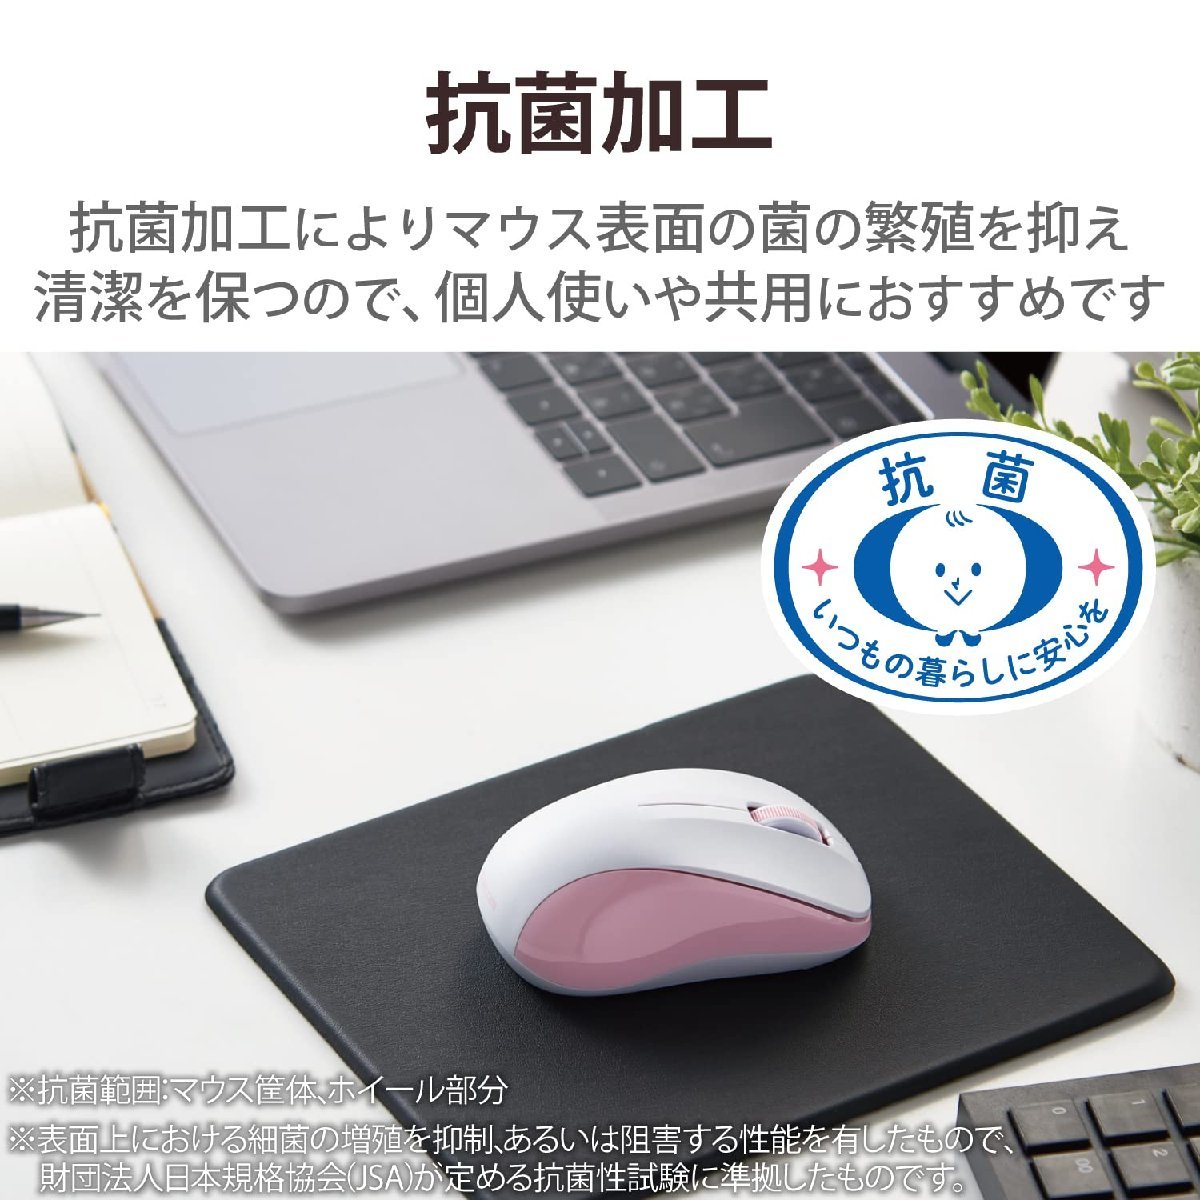 送料無料★エレコム ワイヤレスマウス Bluetooth 3ボタン Sサイズ 抗菌 M-BY10BRKPN (ピンク)_画像2